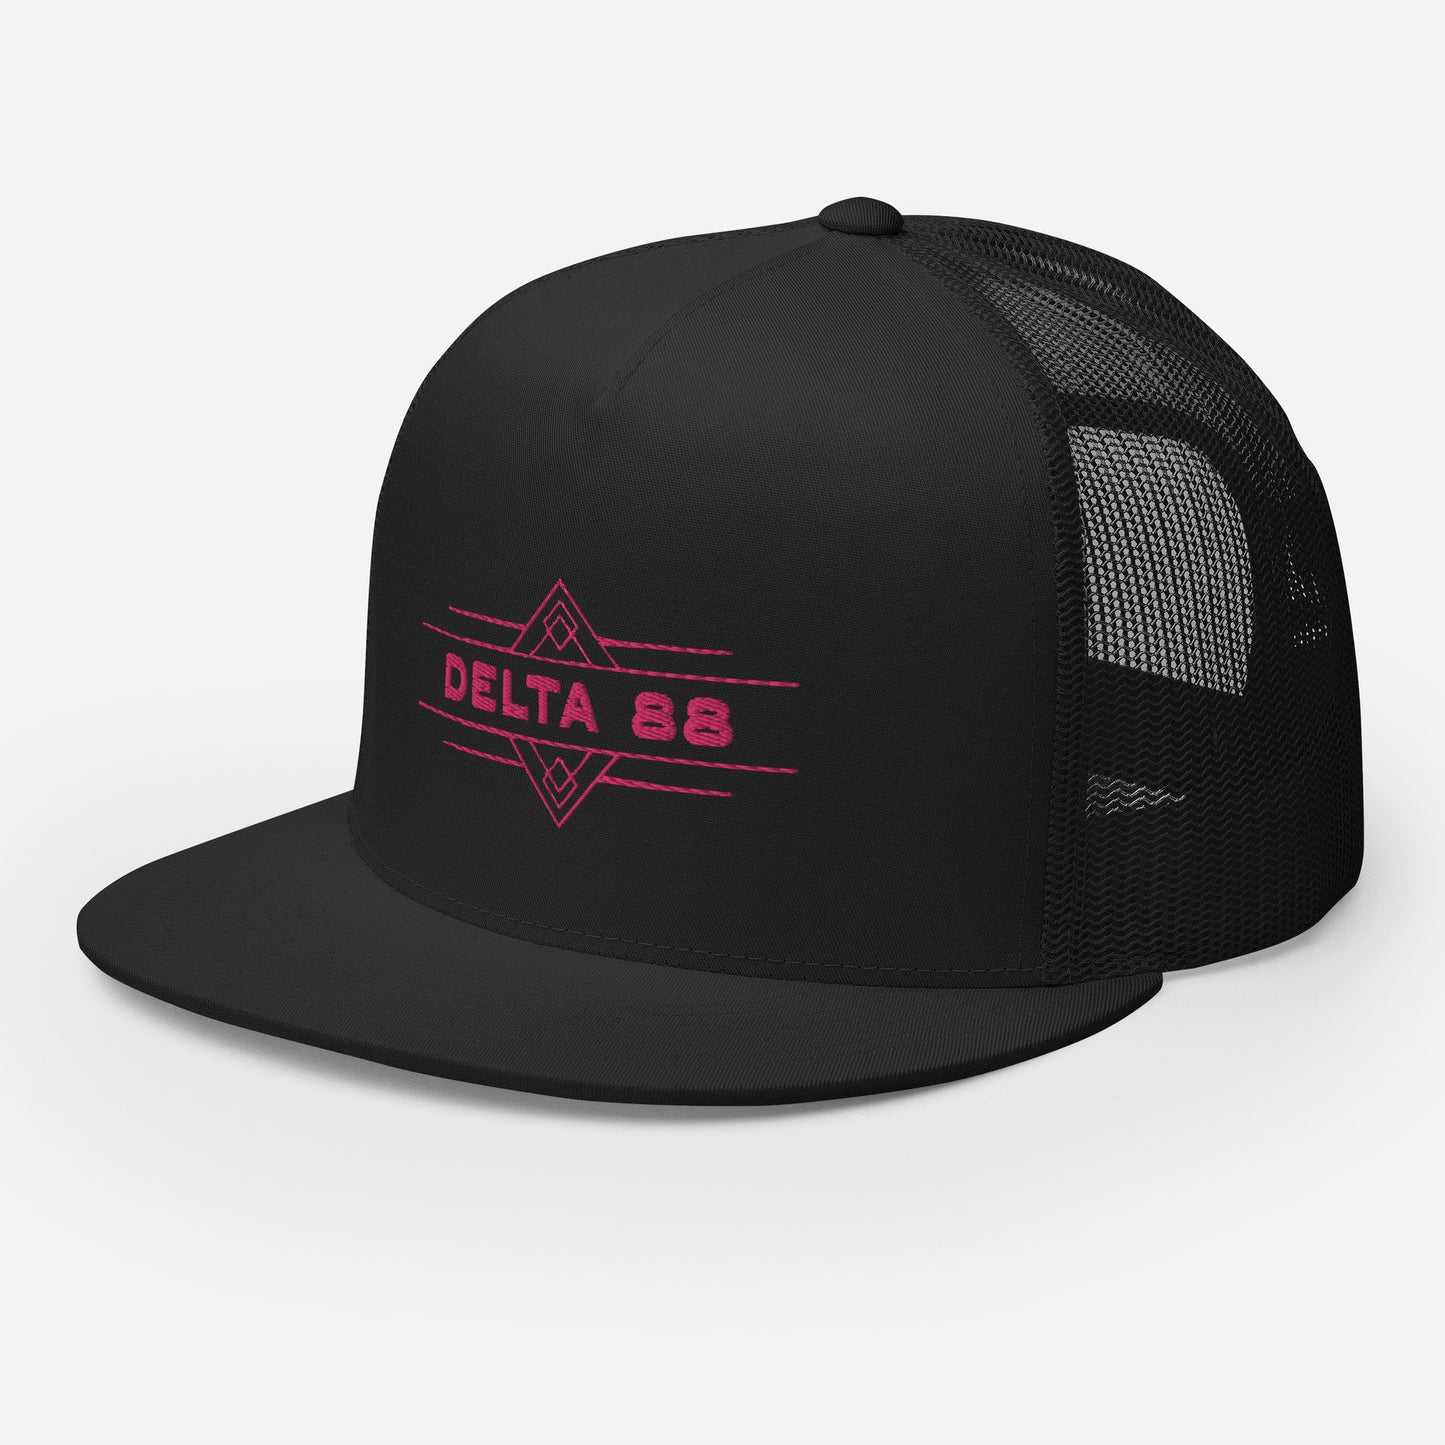 Delta 88 Classic Black/Pink Cap